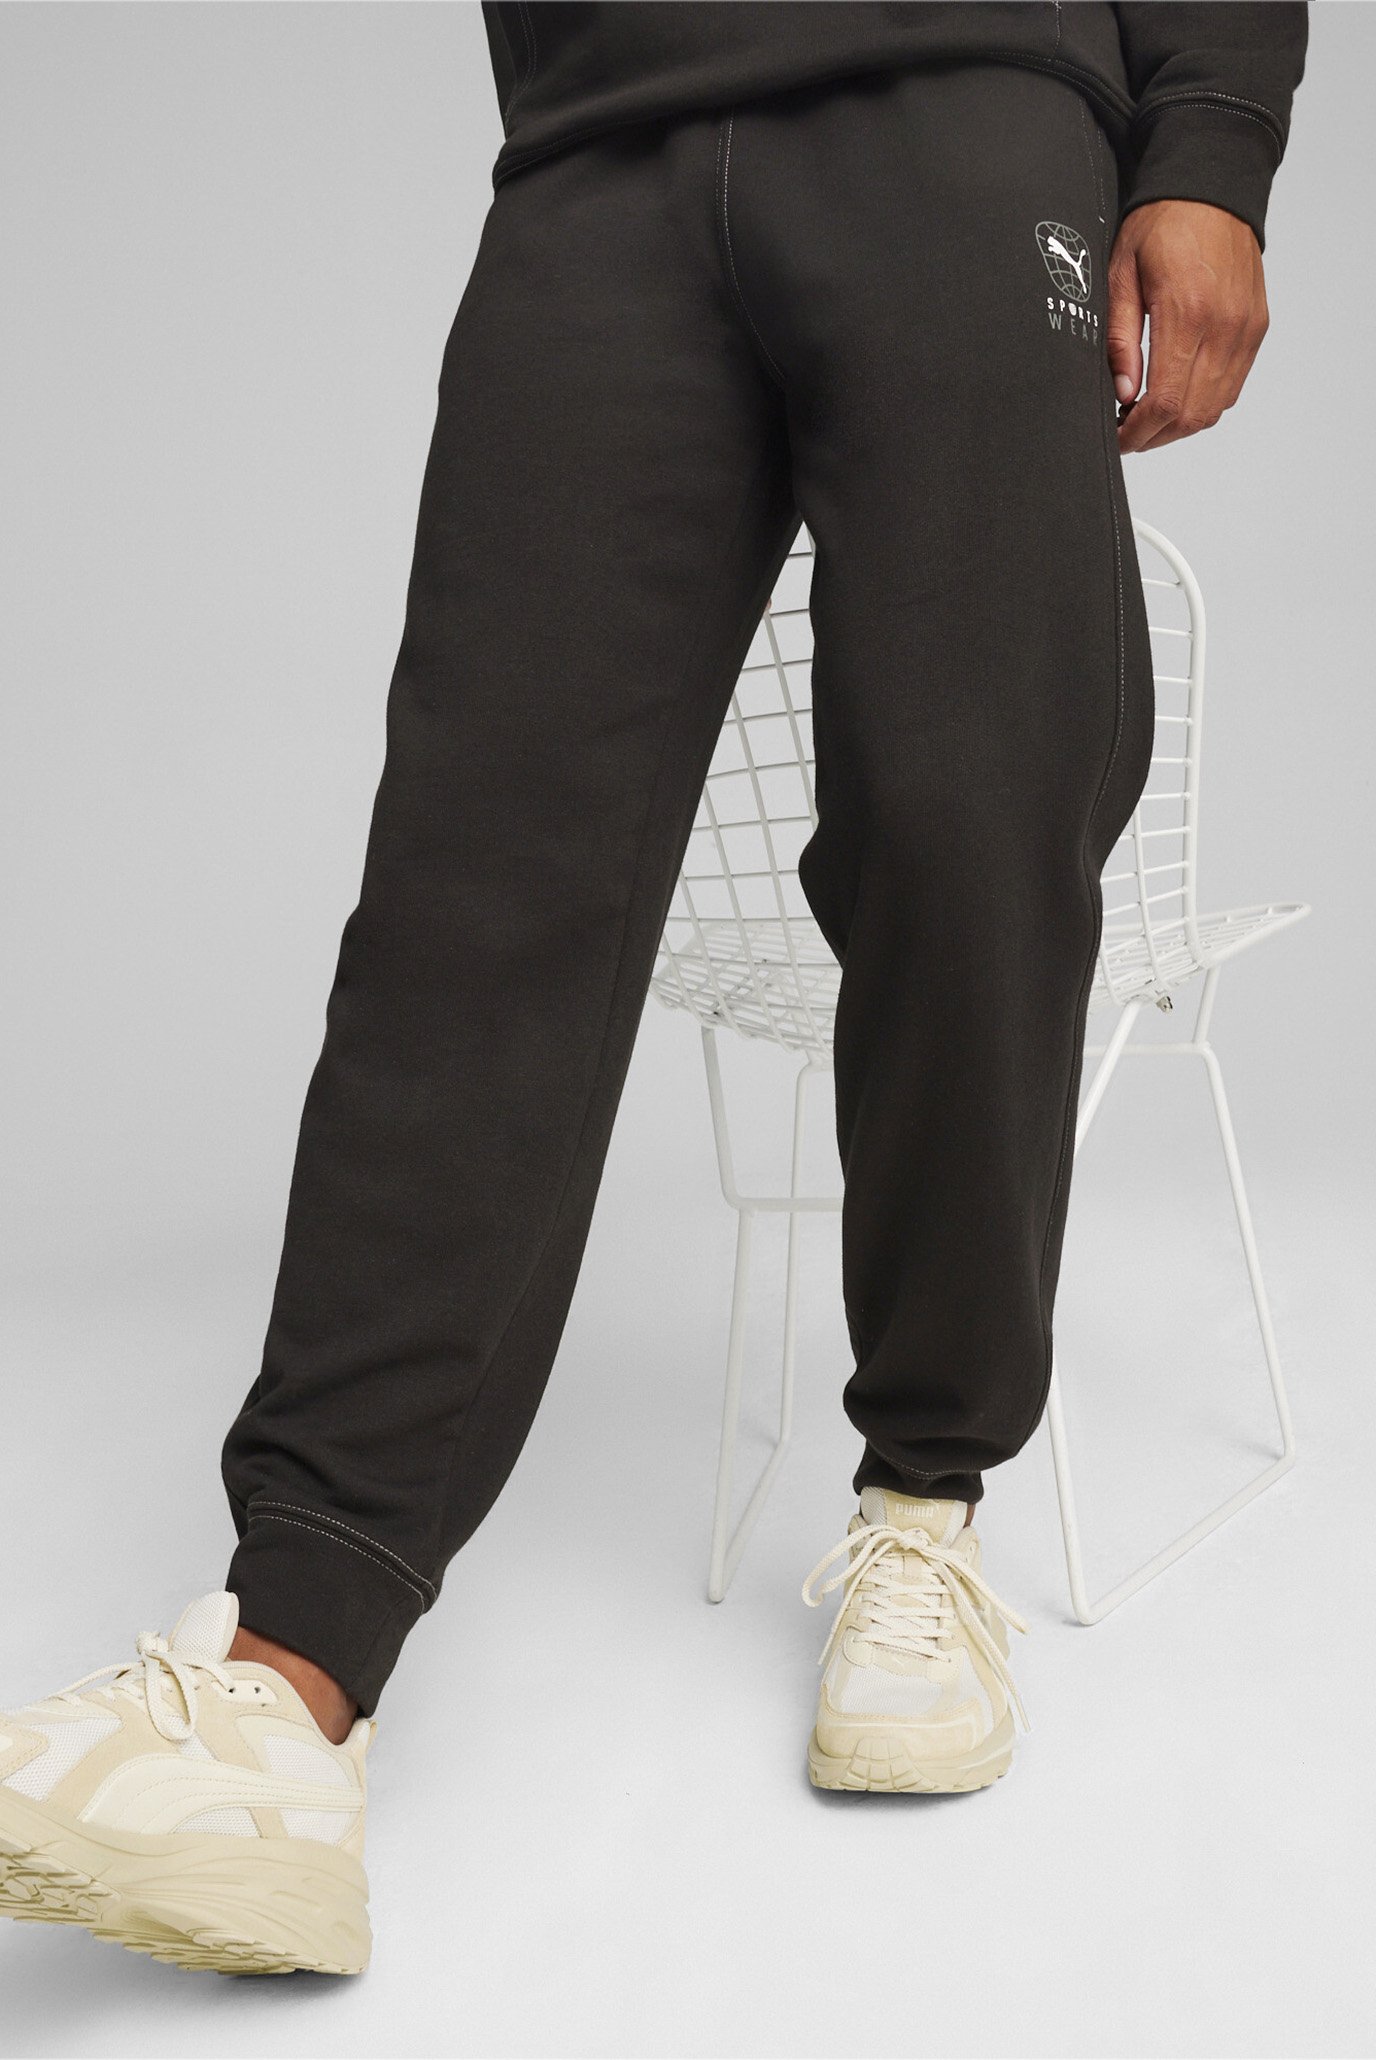 Чоловічі чорні спортивні штани BETTER SPORTSWEAR Men's Sweatpants 1